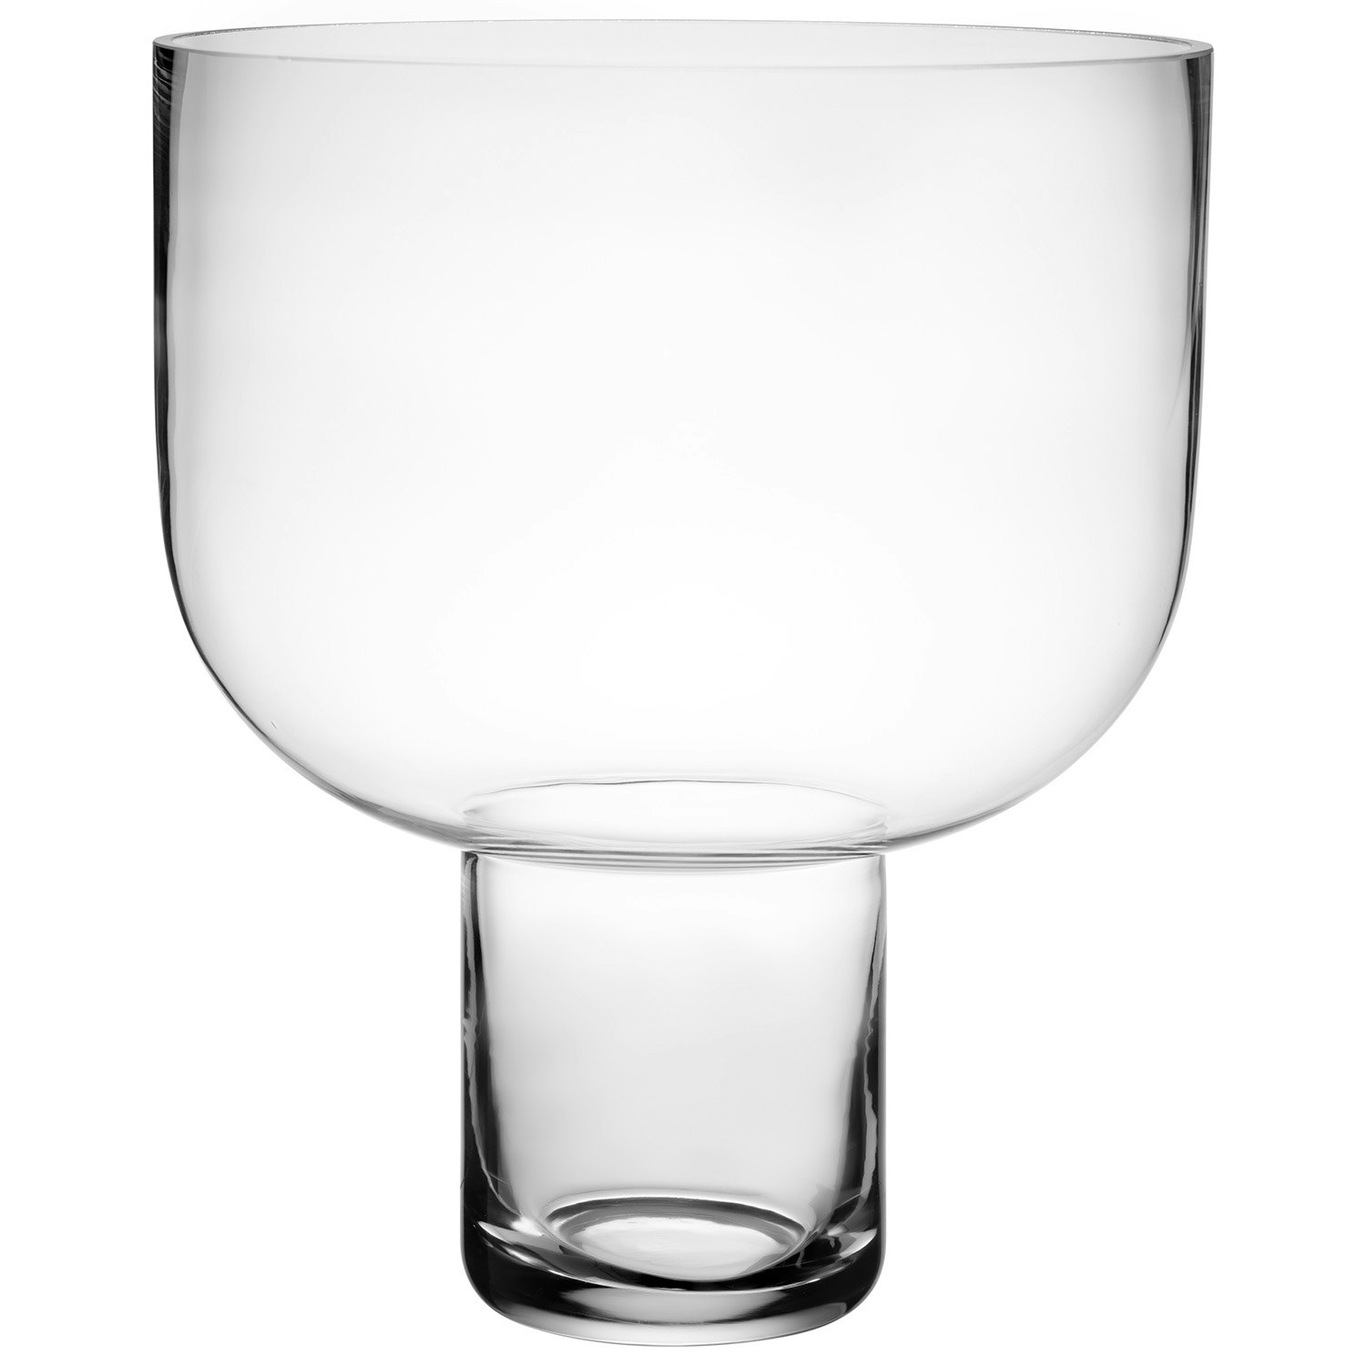 Nebl Vase L 35 cm, Clear